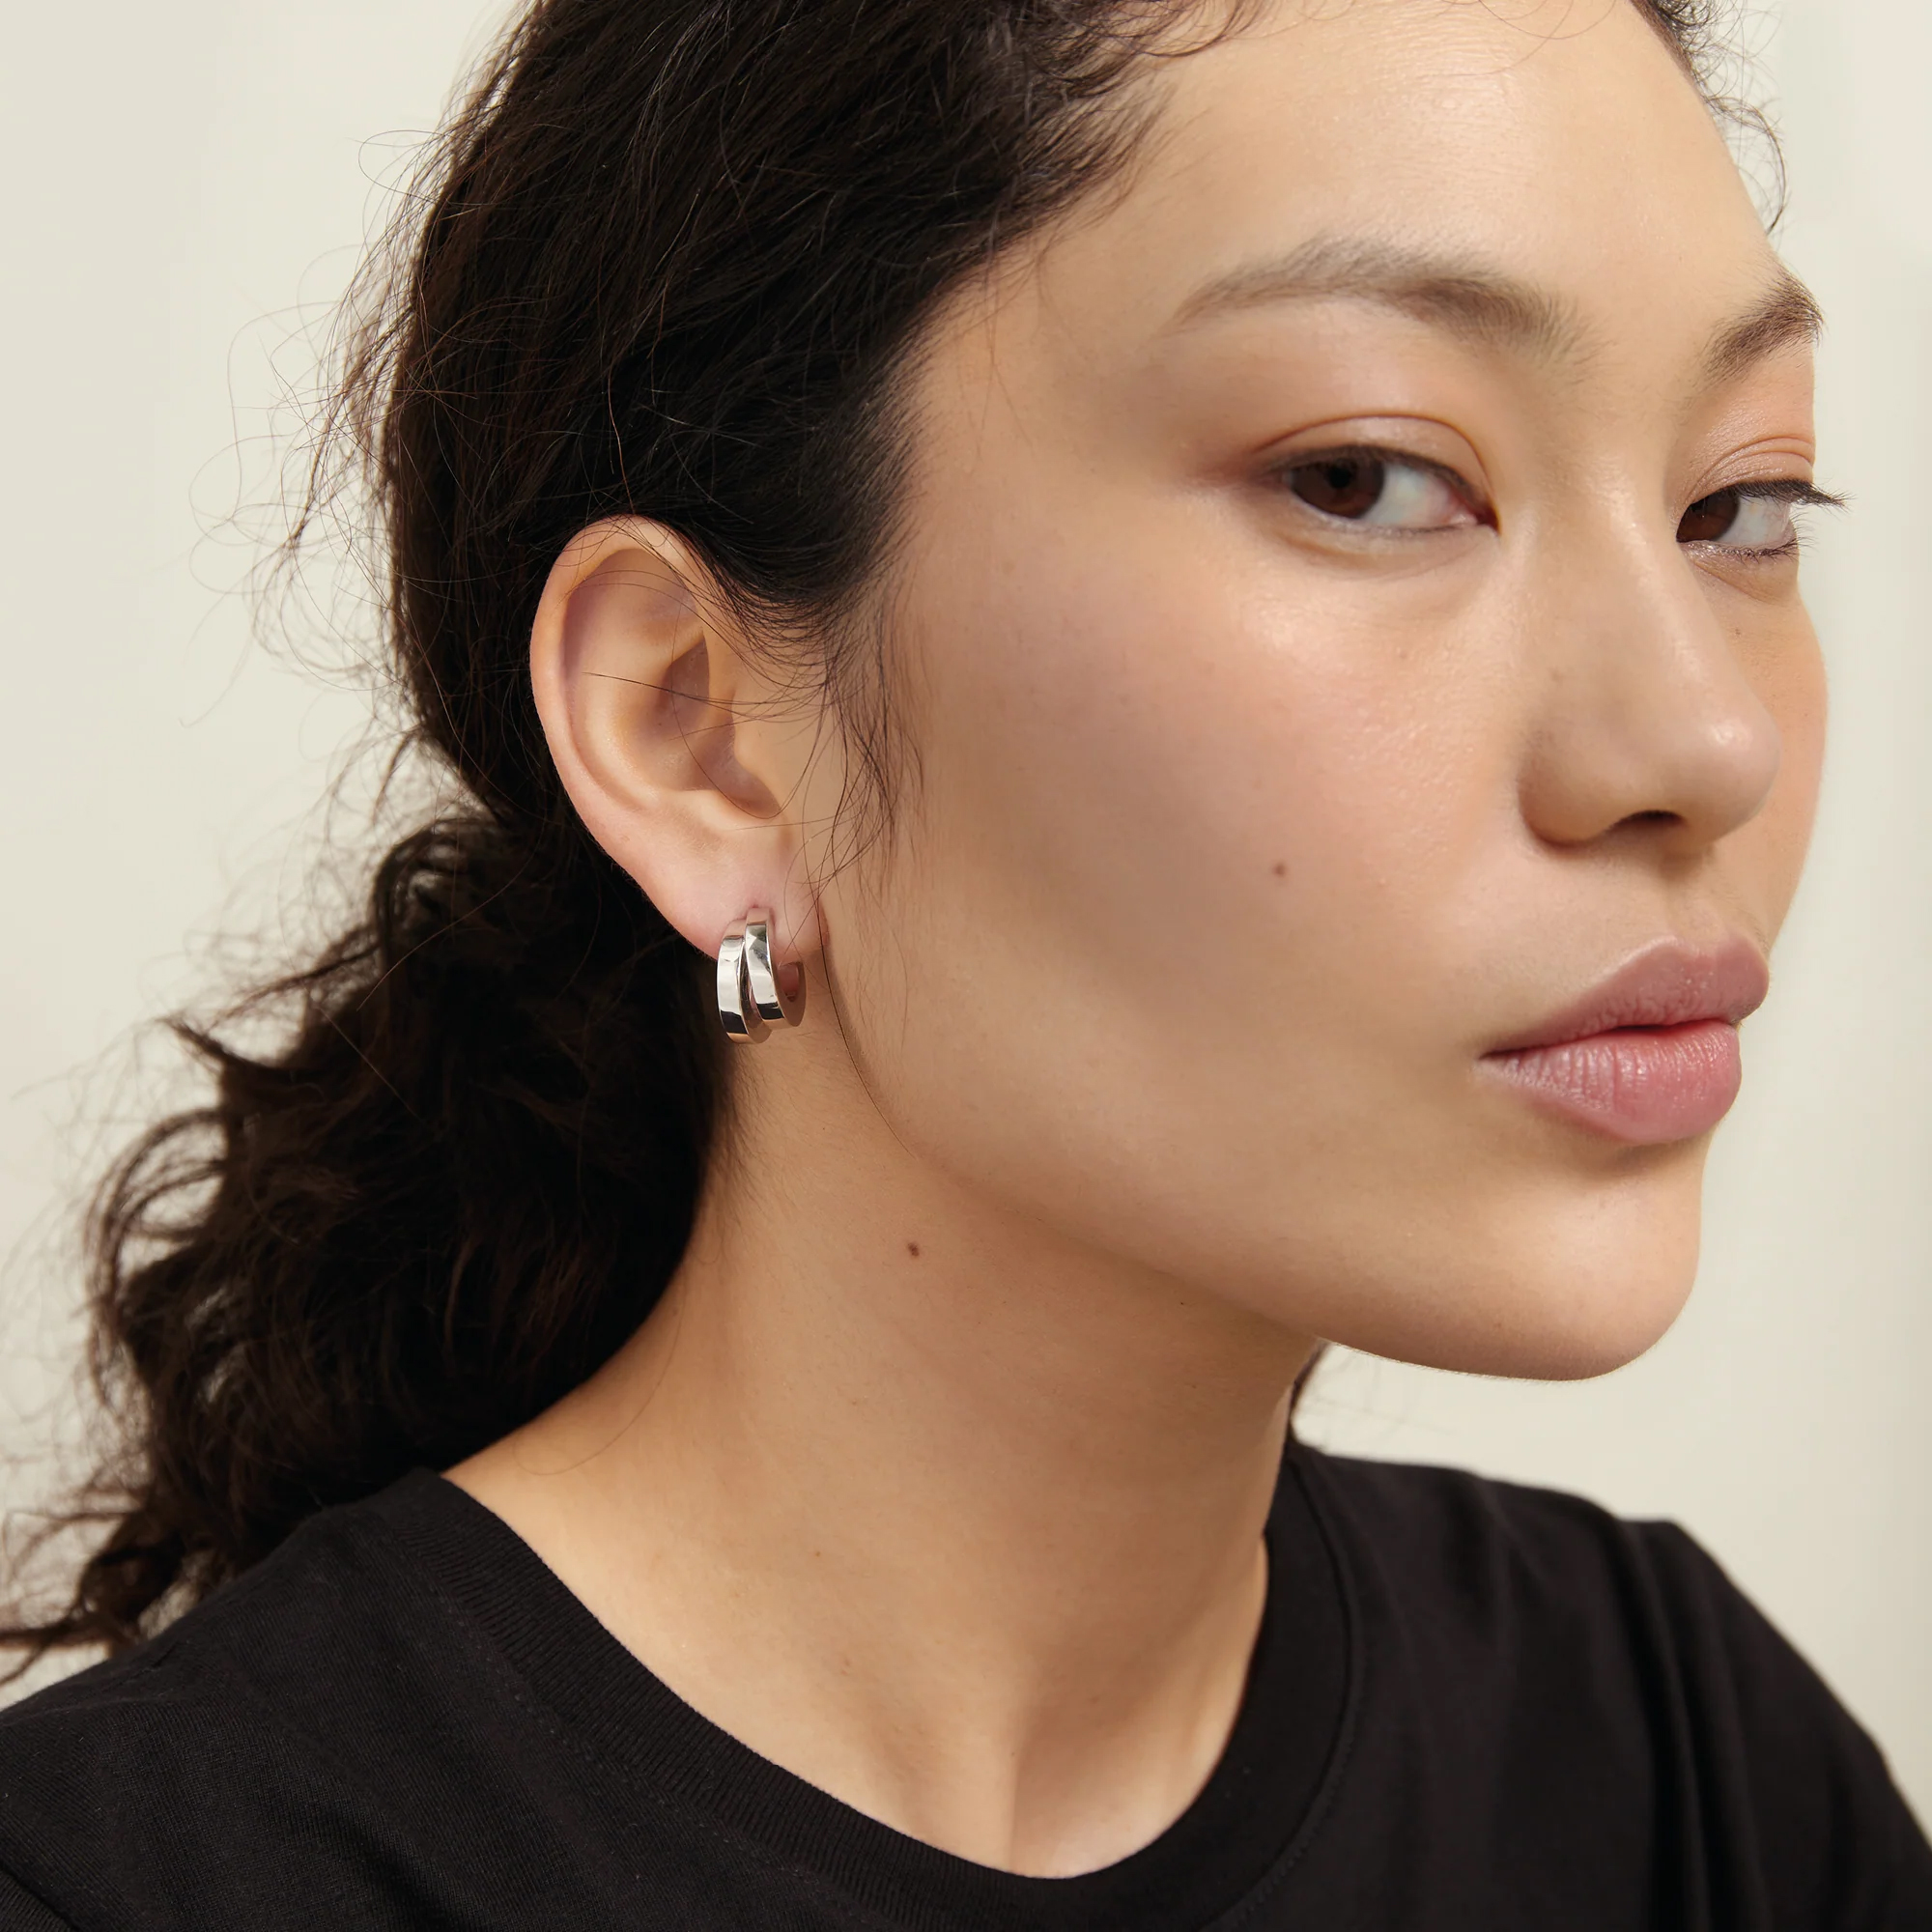 A model wearing Monarc Jewelly earrings